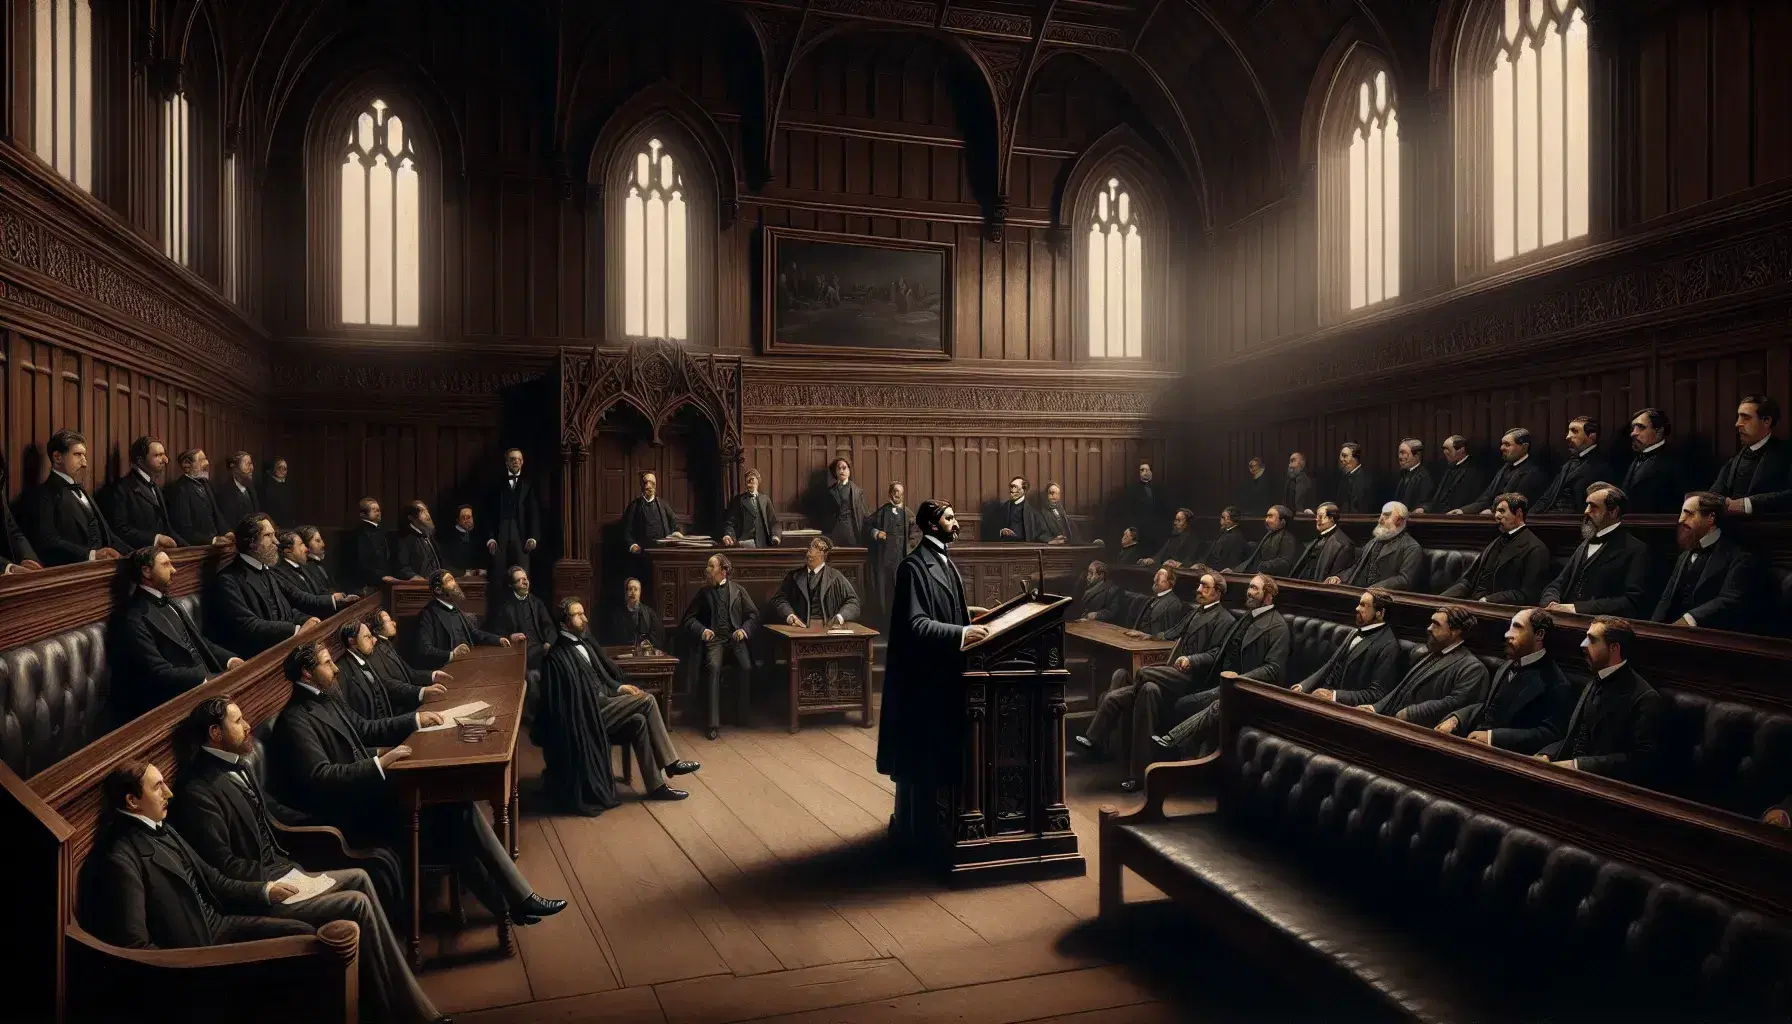 Gruppo di uomini in abiti vittoriani ascolta oratore al leggio in aula parlamentare storica con sedie intagliate, pareti in legno e finestre ad arco.